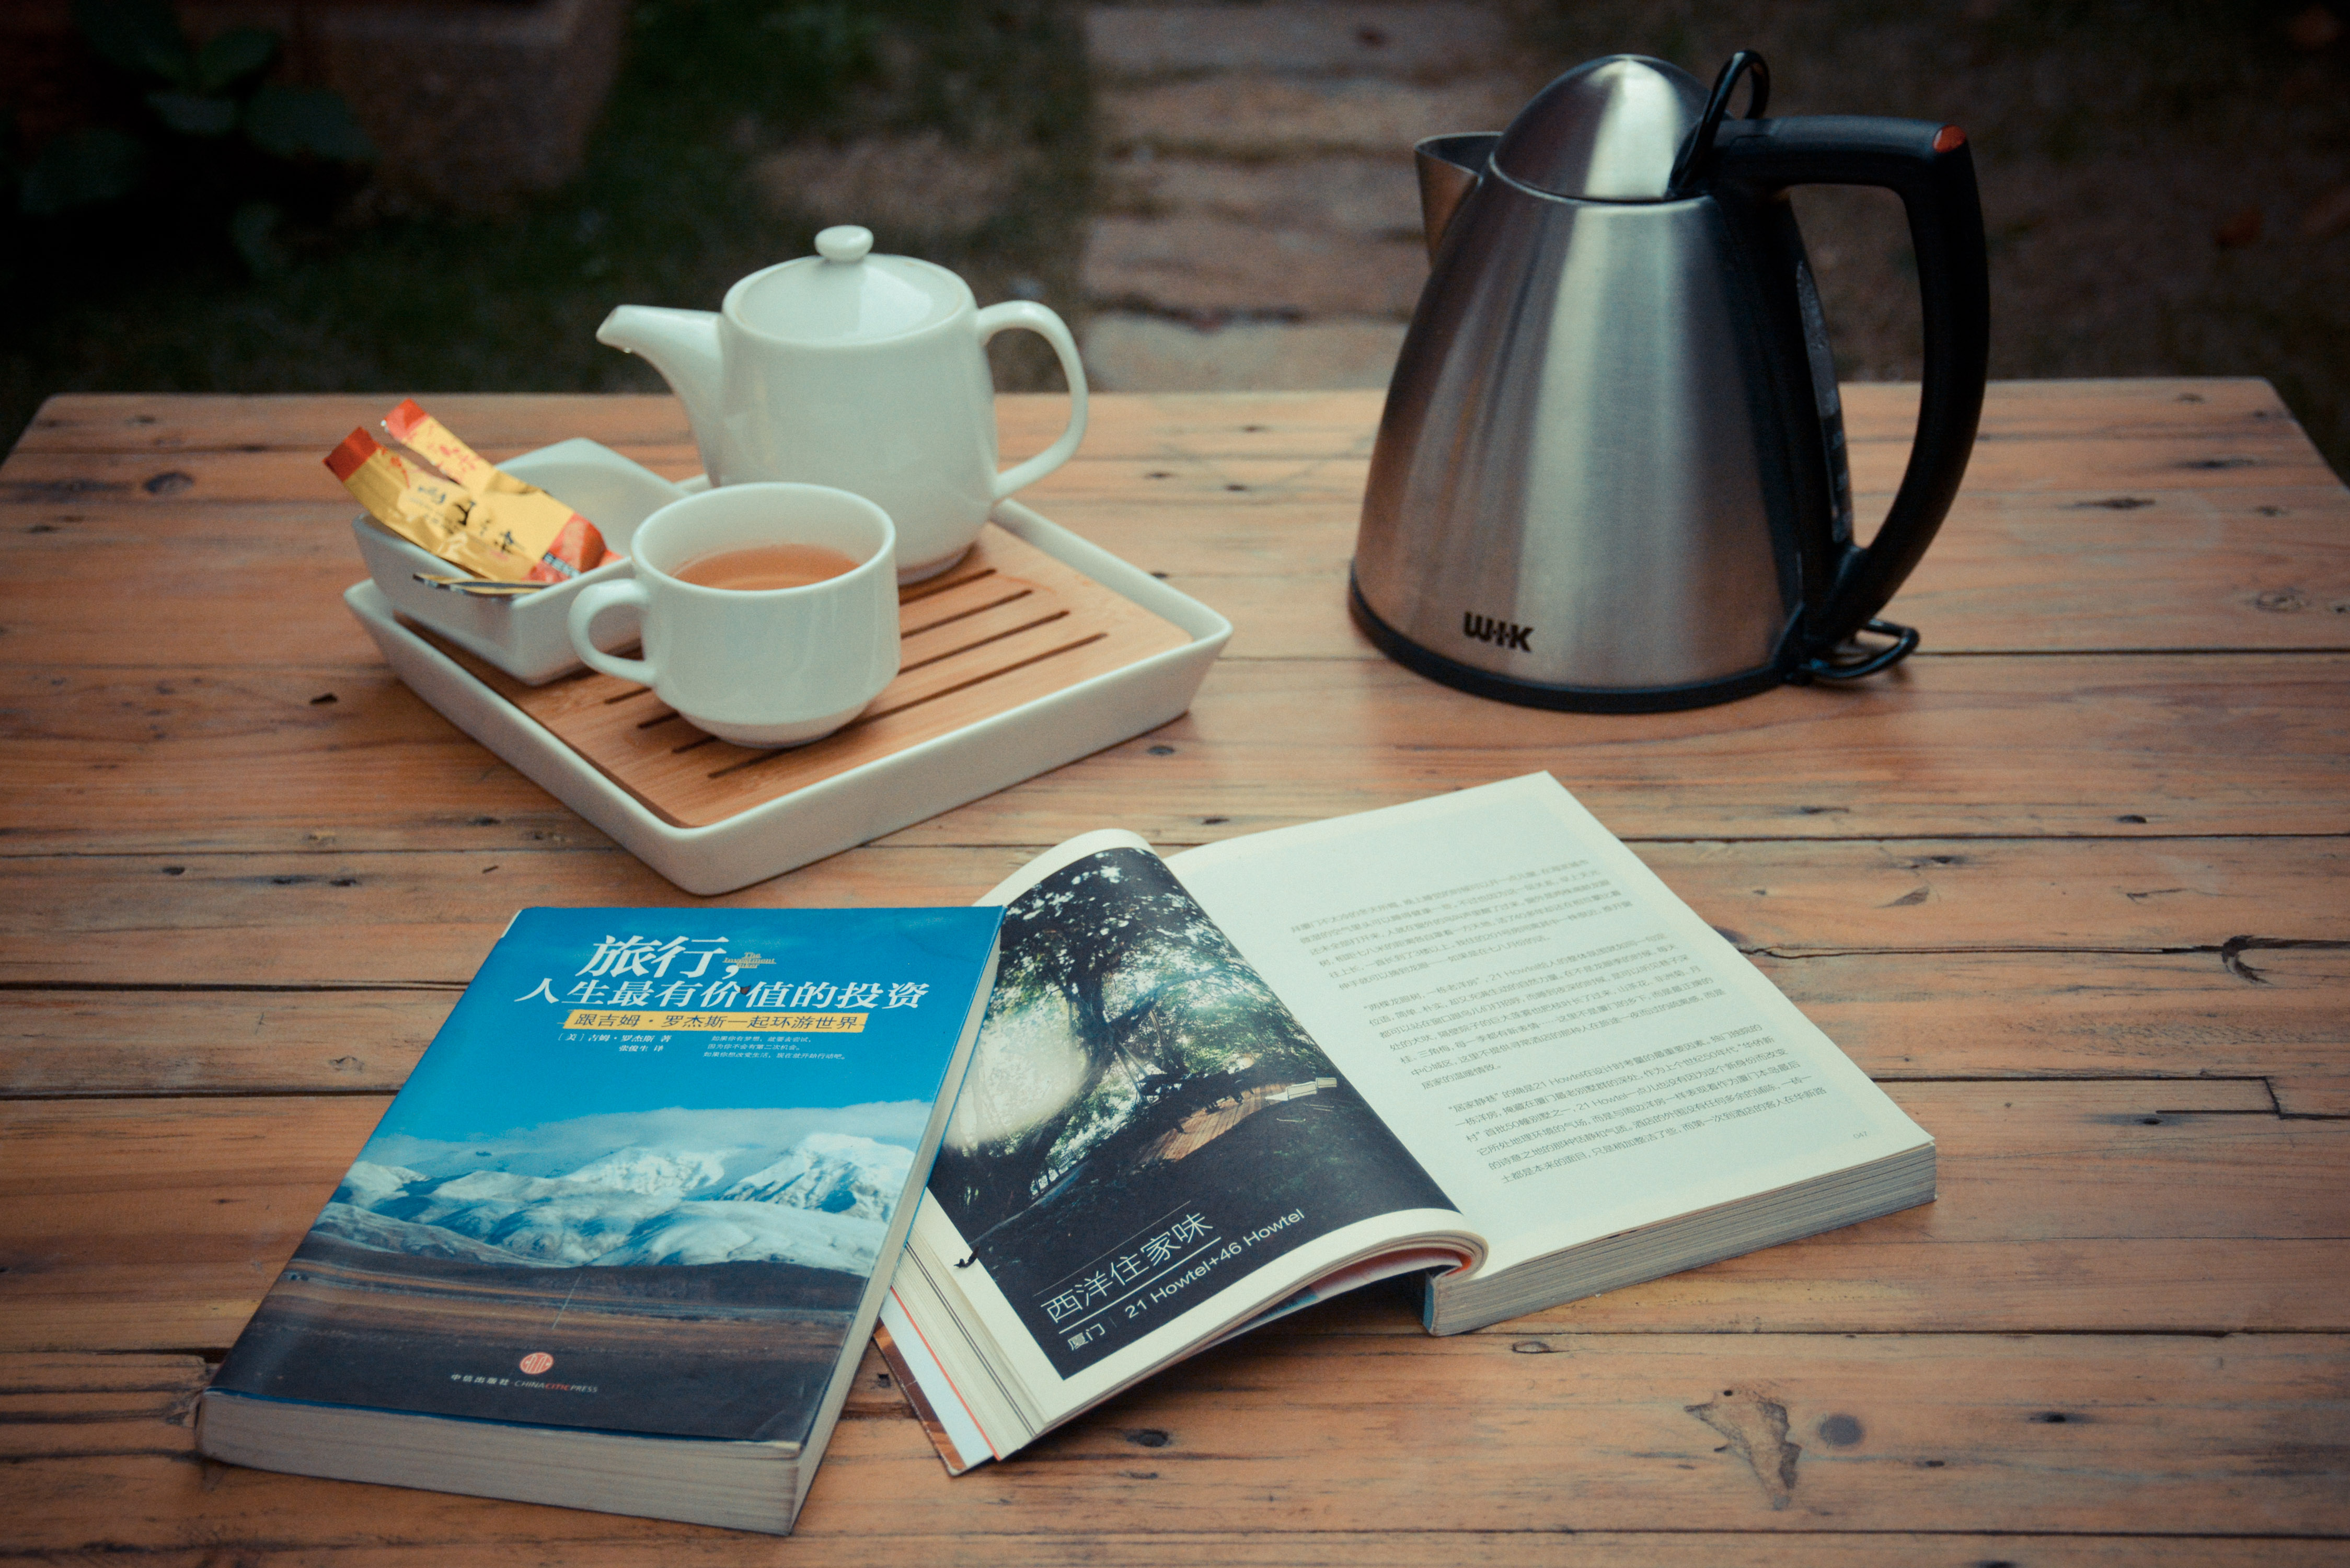 一杯茶,一本书,一台收音机,在叶舍,享受一份宁静